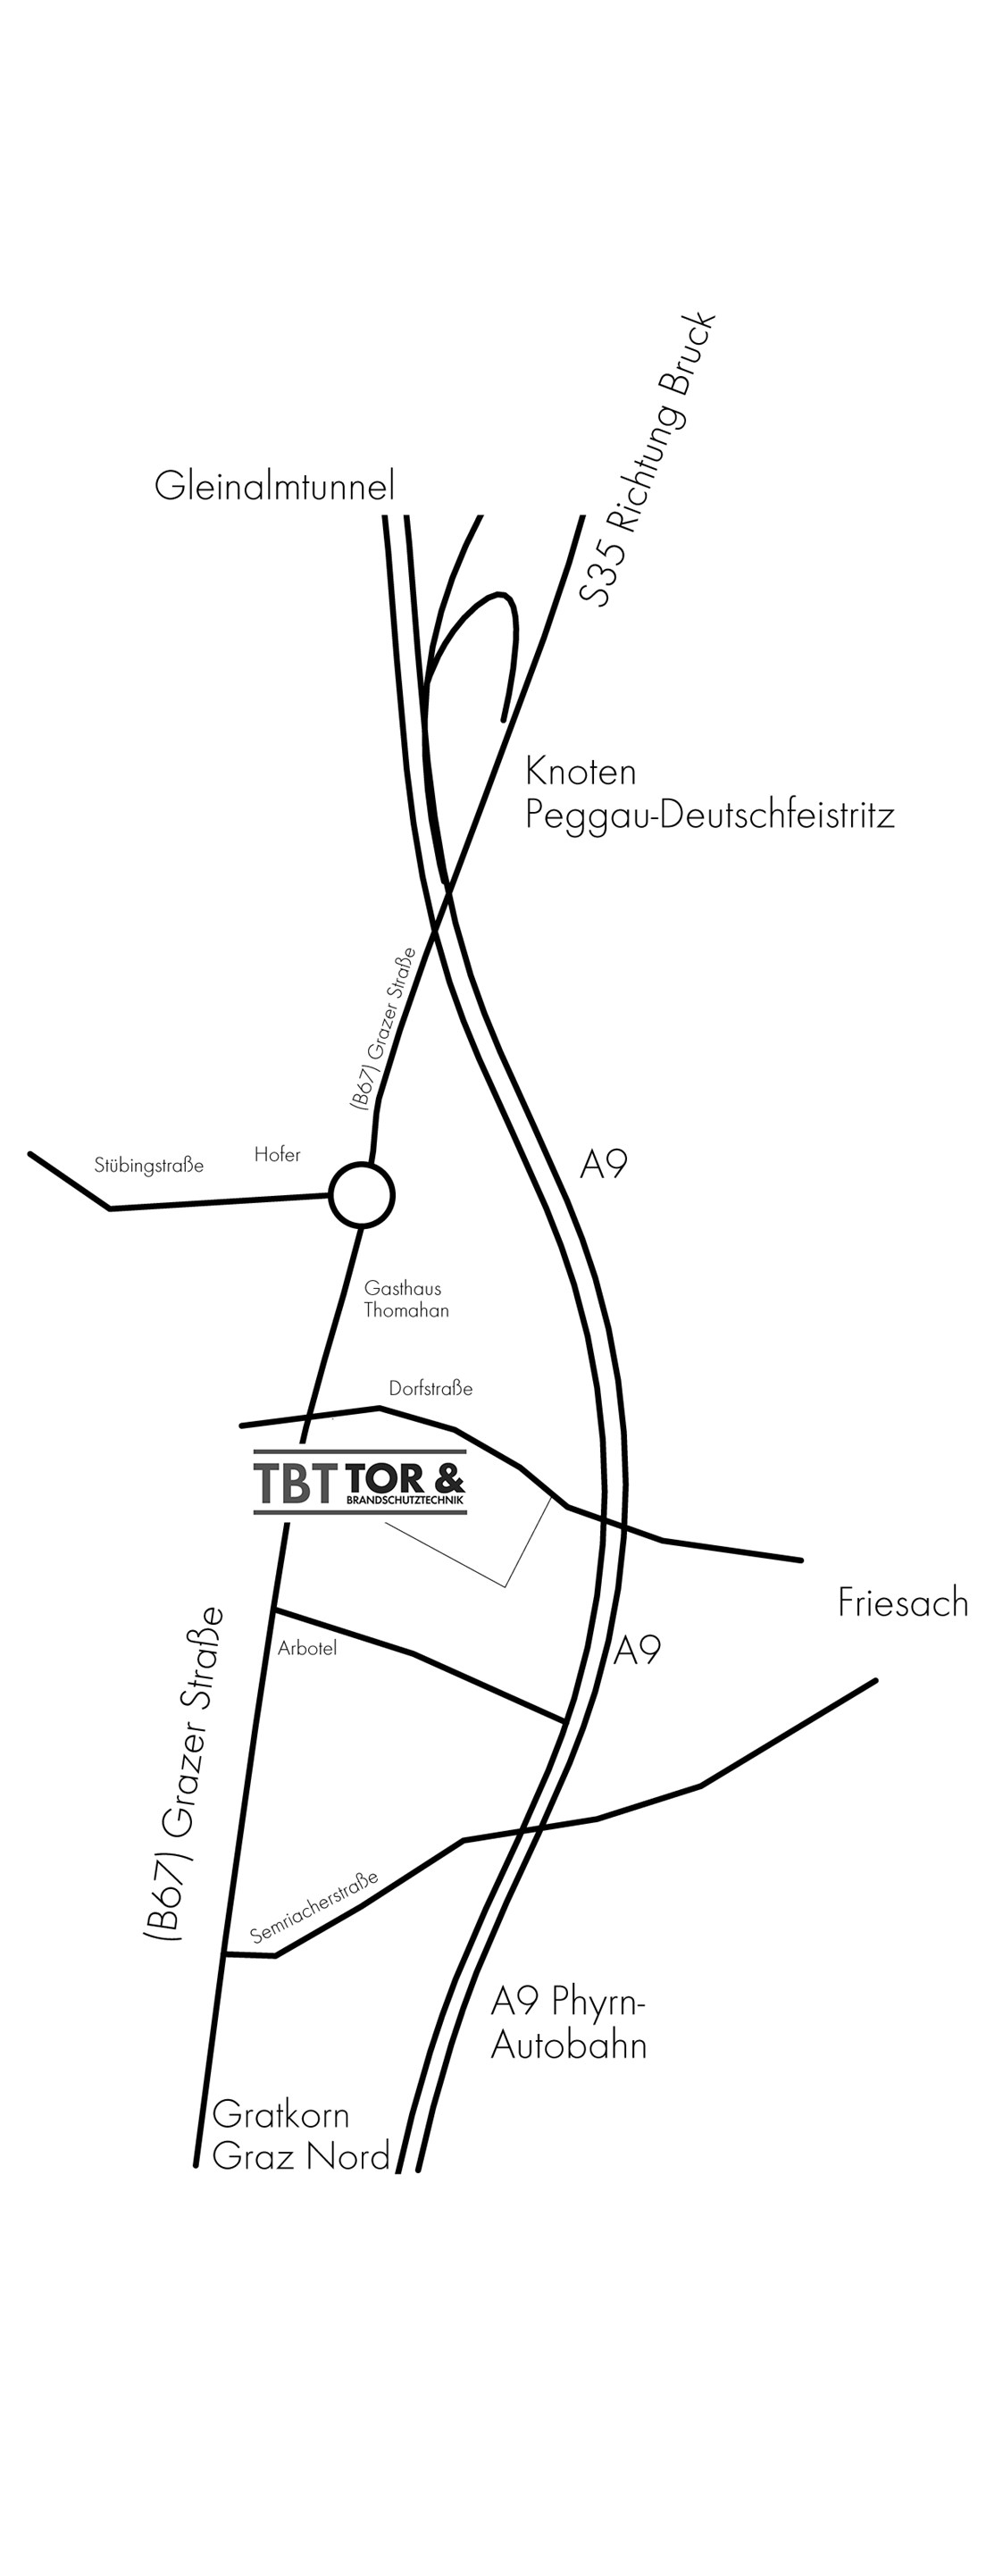 Unternehmen: Anfahrt - TBT – Tor & Brandschutztechnik GmbH